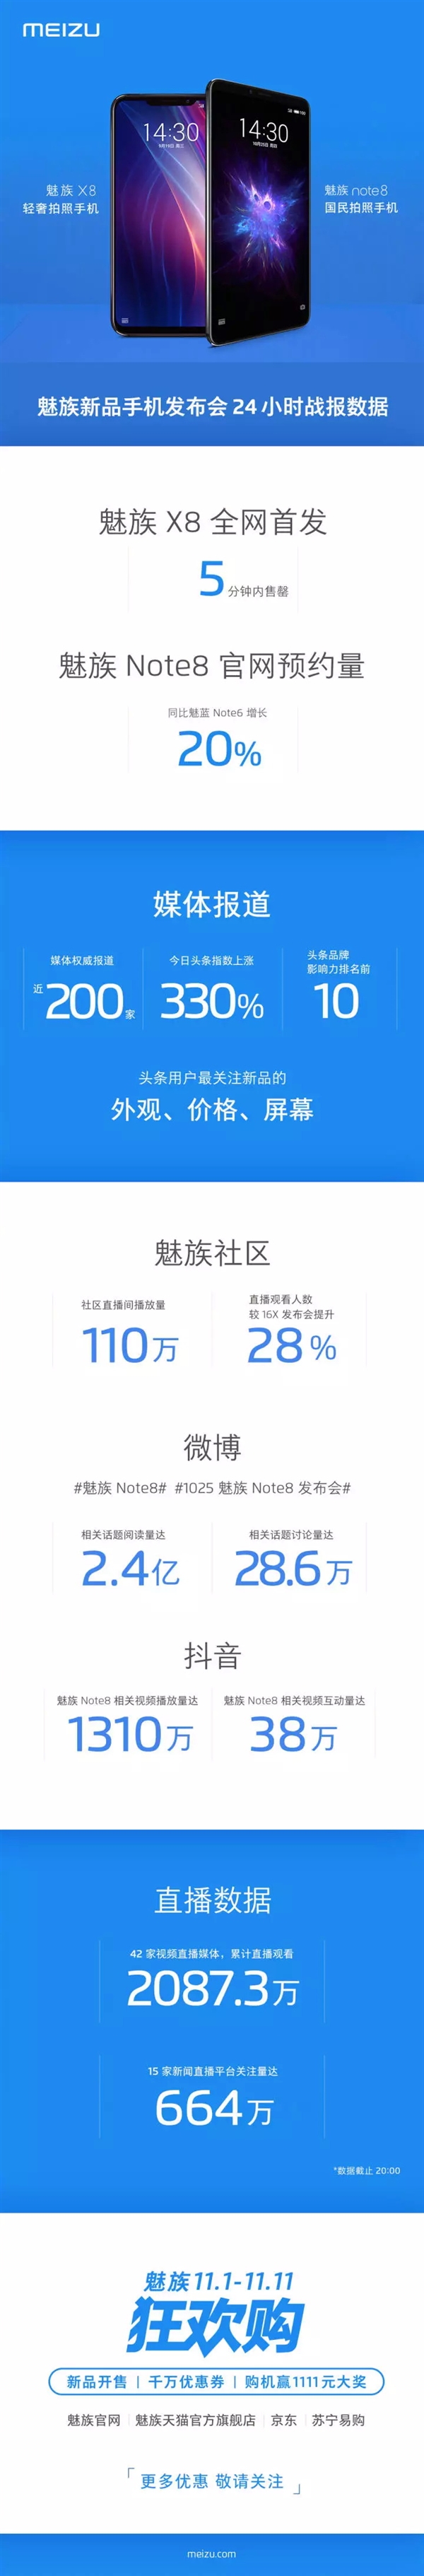 魅族秀战绩：魅族X8 5分钟售罄 魅族Note 8预约量涨20％